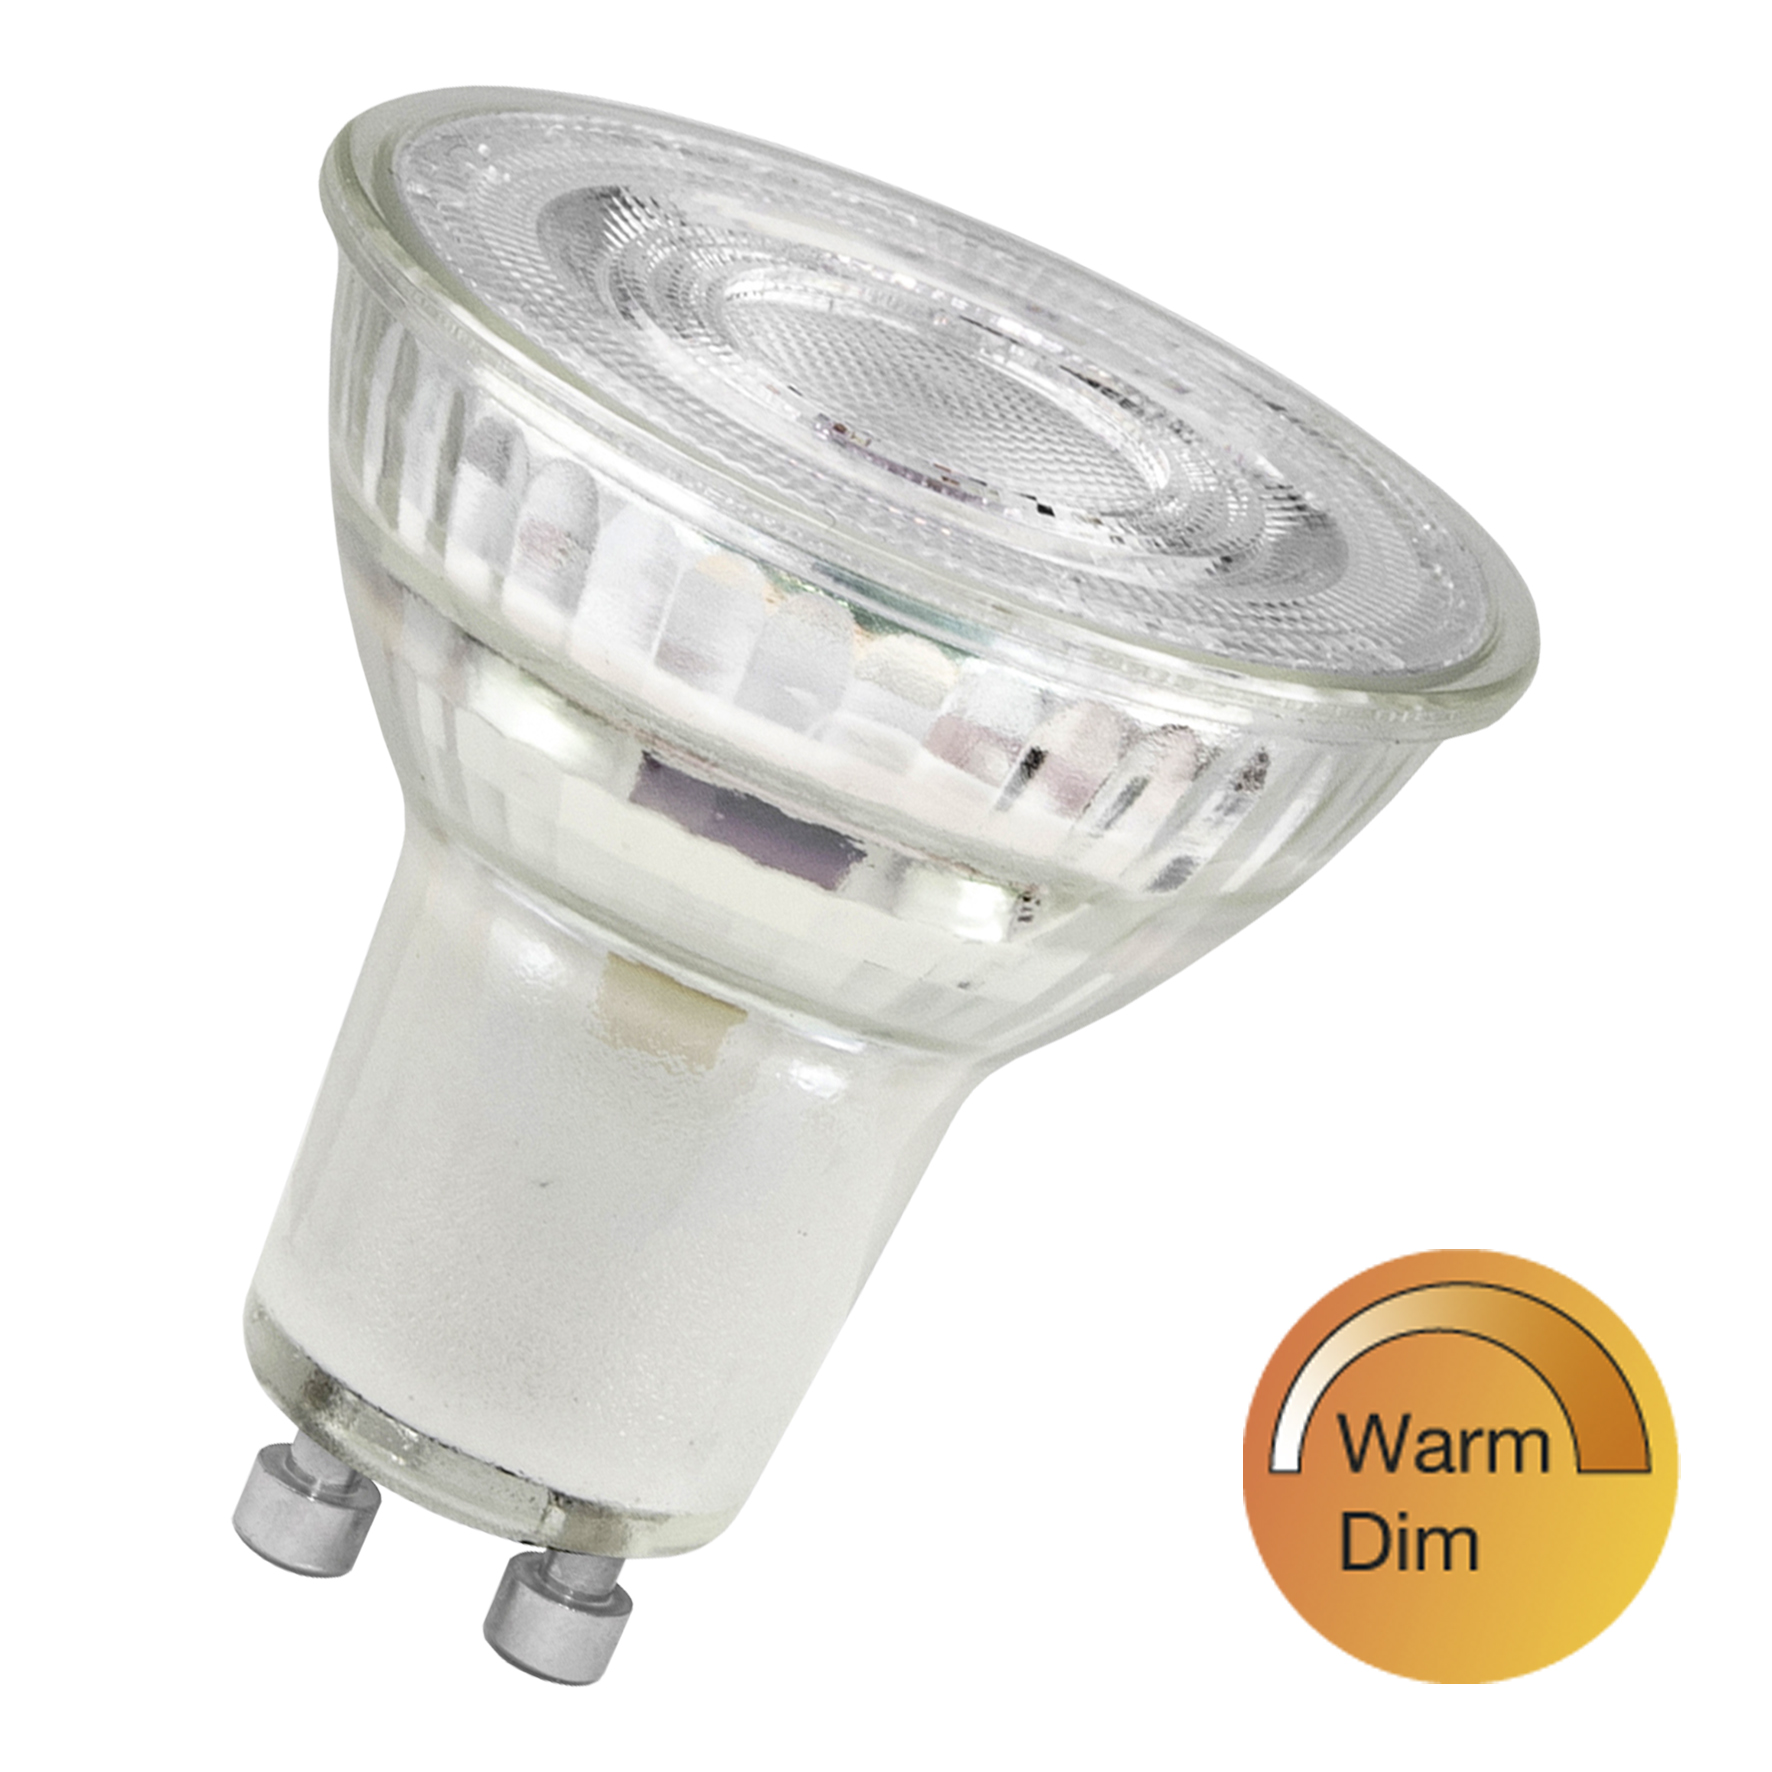 TUN LED PAR16 GU10 WarmDim 5W (50W) 380lm 827-820 35D